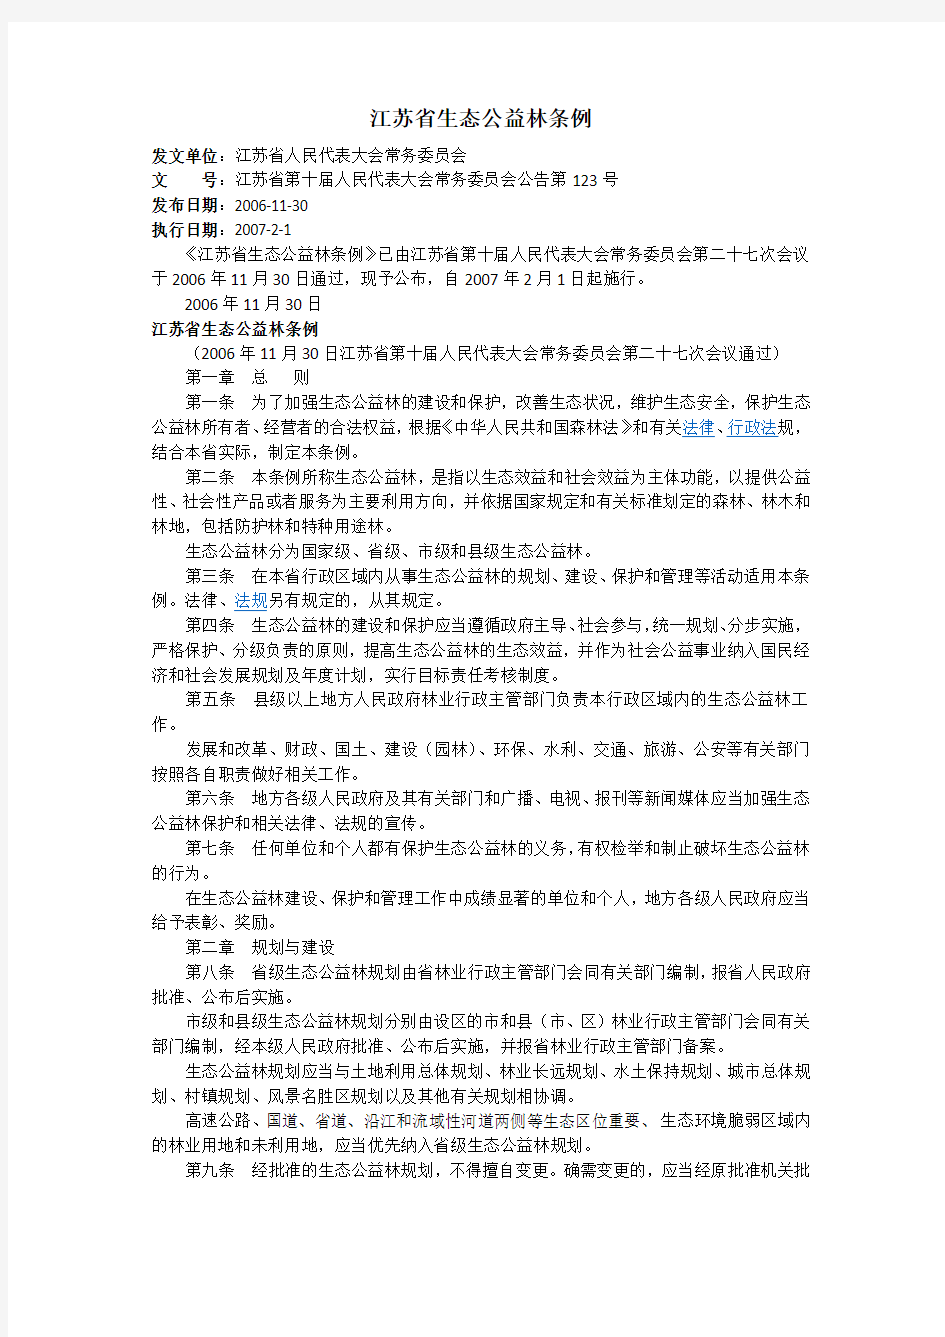 江苏省生态公益林条例(江苏省第十届人民代表大会常务委员会公告第123号)